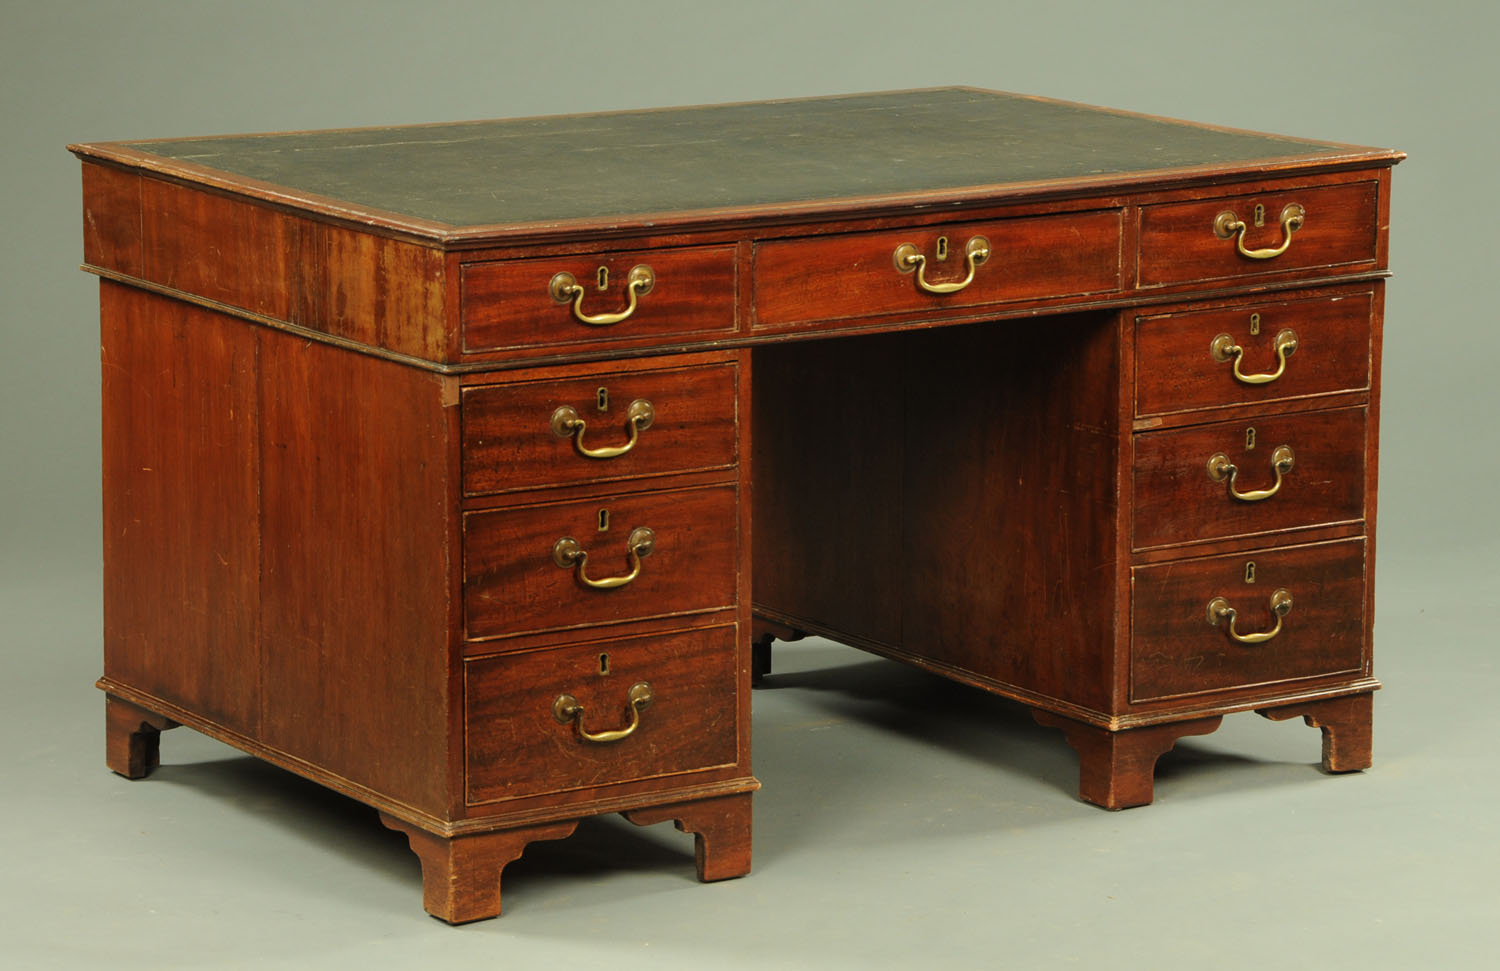 A 19th century mahogany partners desk,